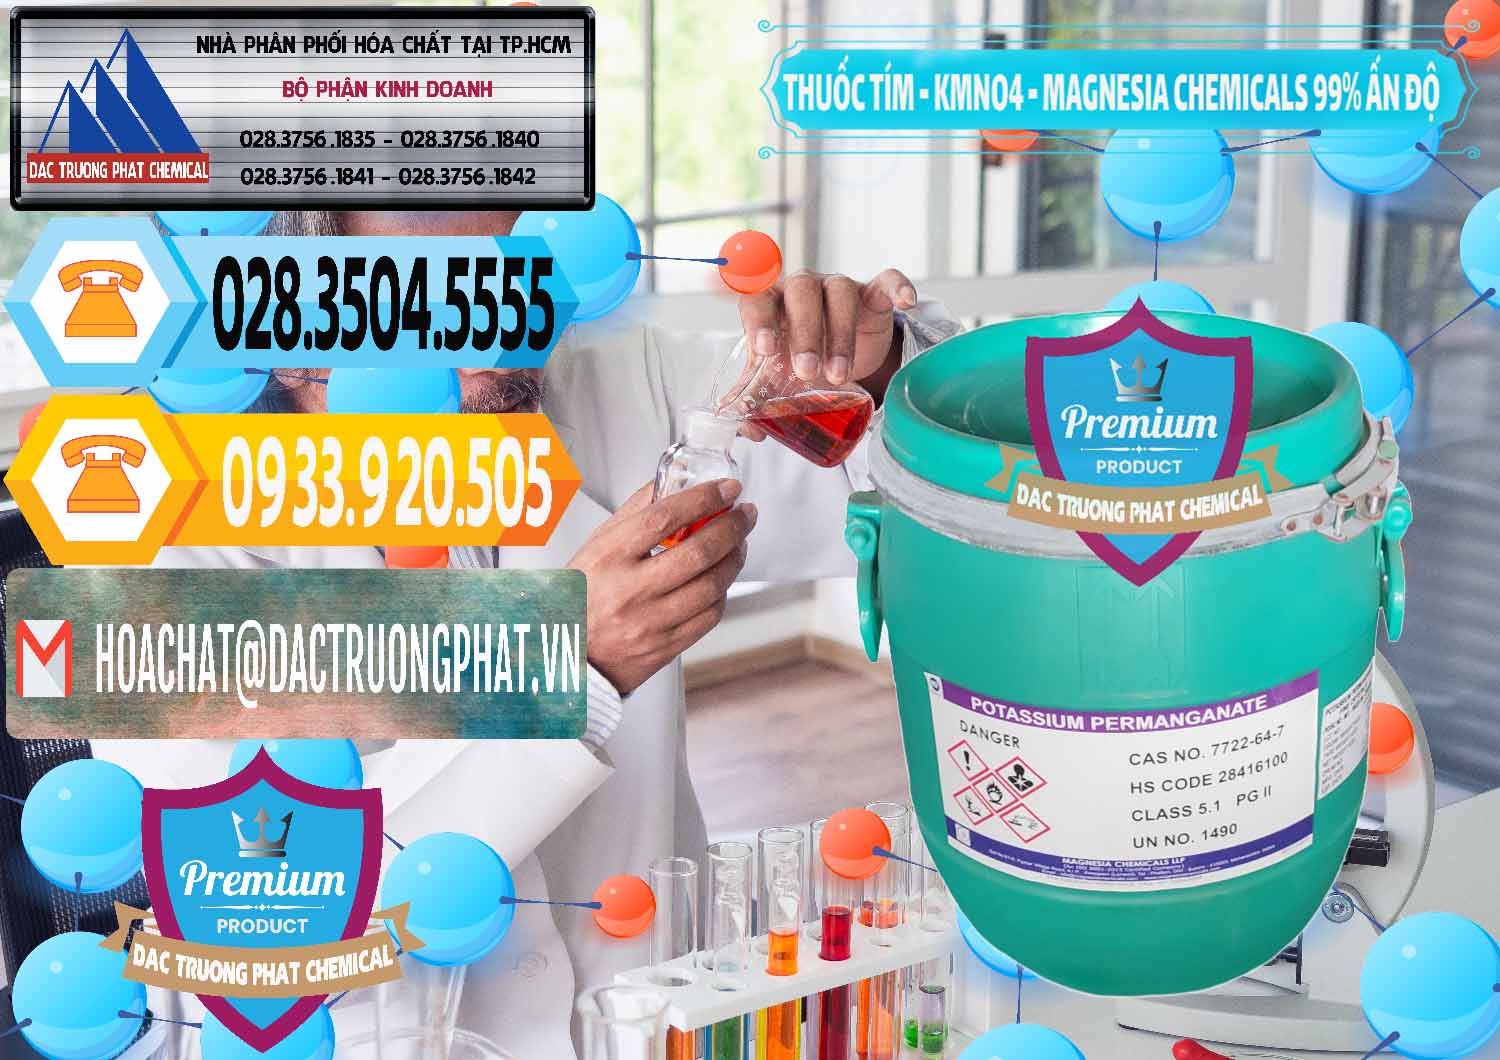 Công ty cung ứng & bán Thuốc Tím - KMNO4 Magnesia Chemicals 99% Ấn Độ India - 0251 - Công ty kinh doanh ( phân phối ) hóa chất tại TP.HCM - hoachattayrua.net